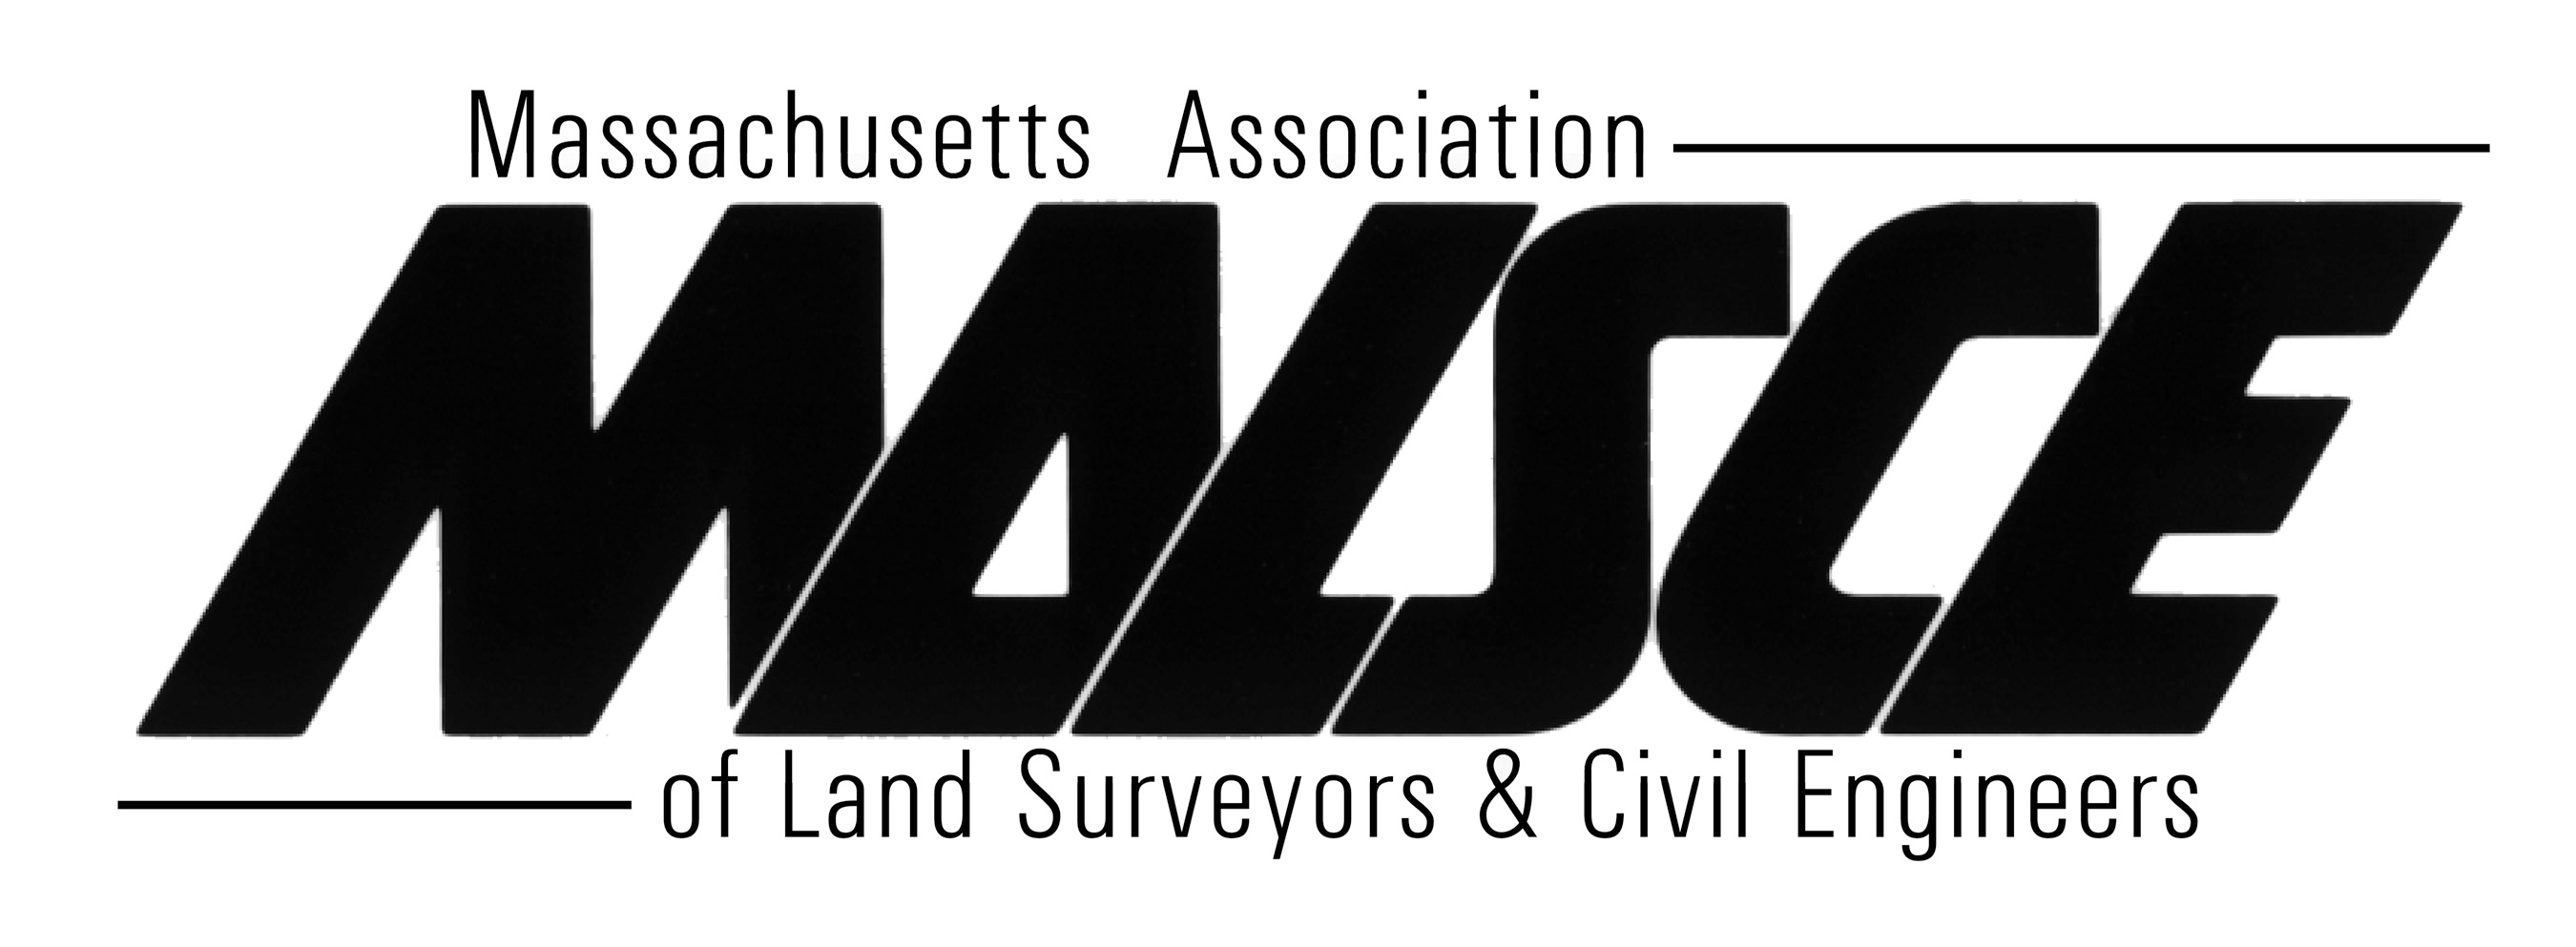 Massachusetts Association of Land Surveyors & Civil Engineers